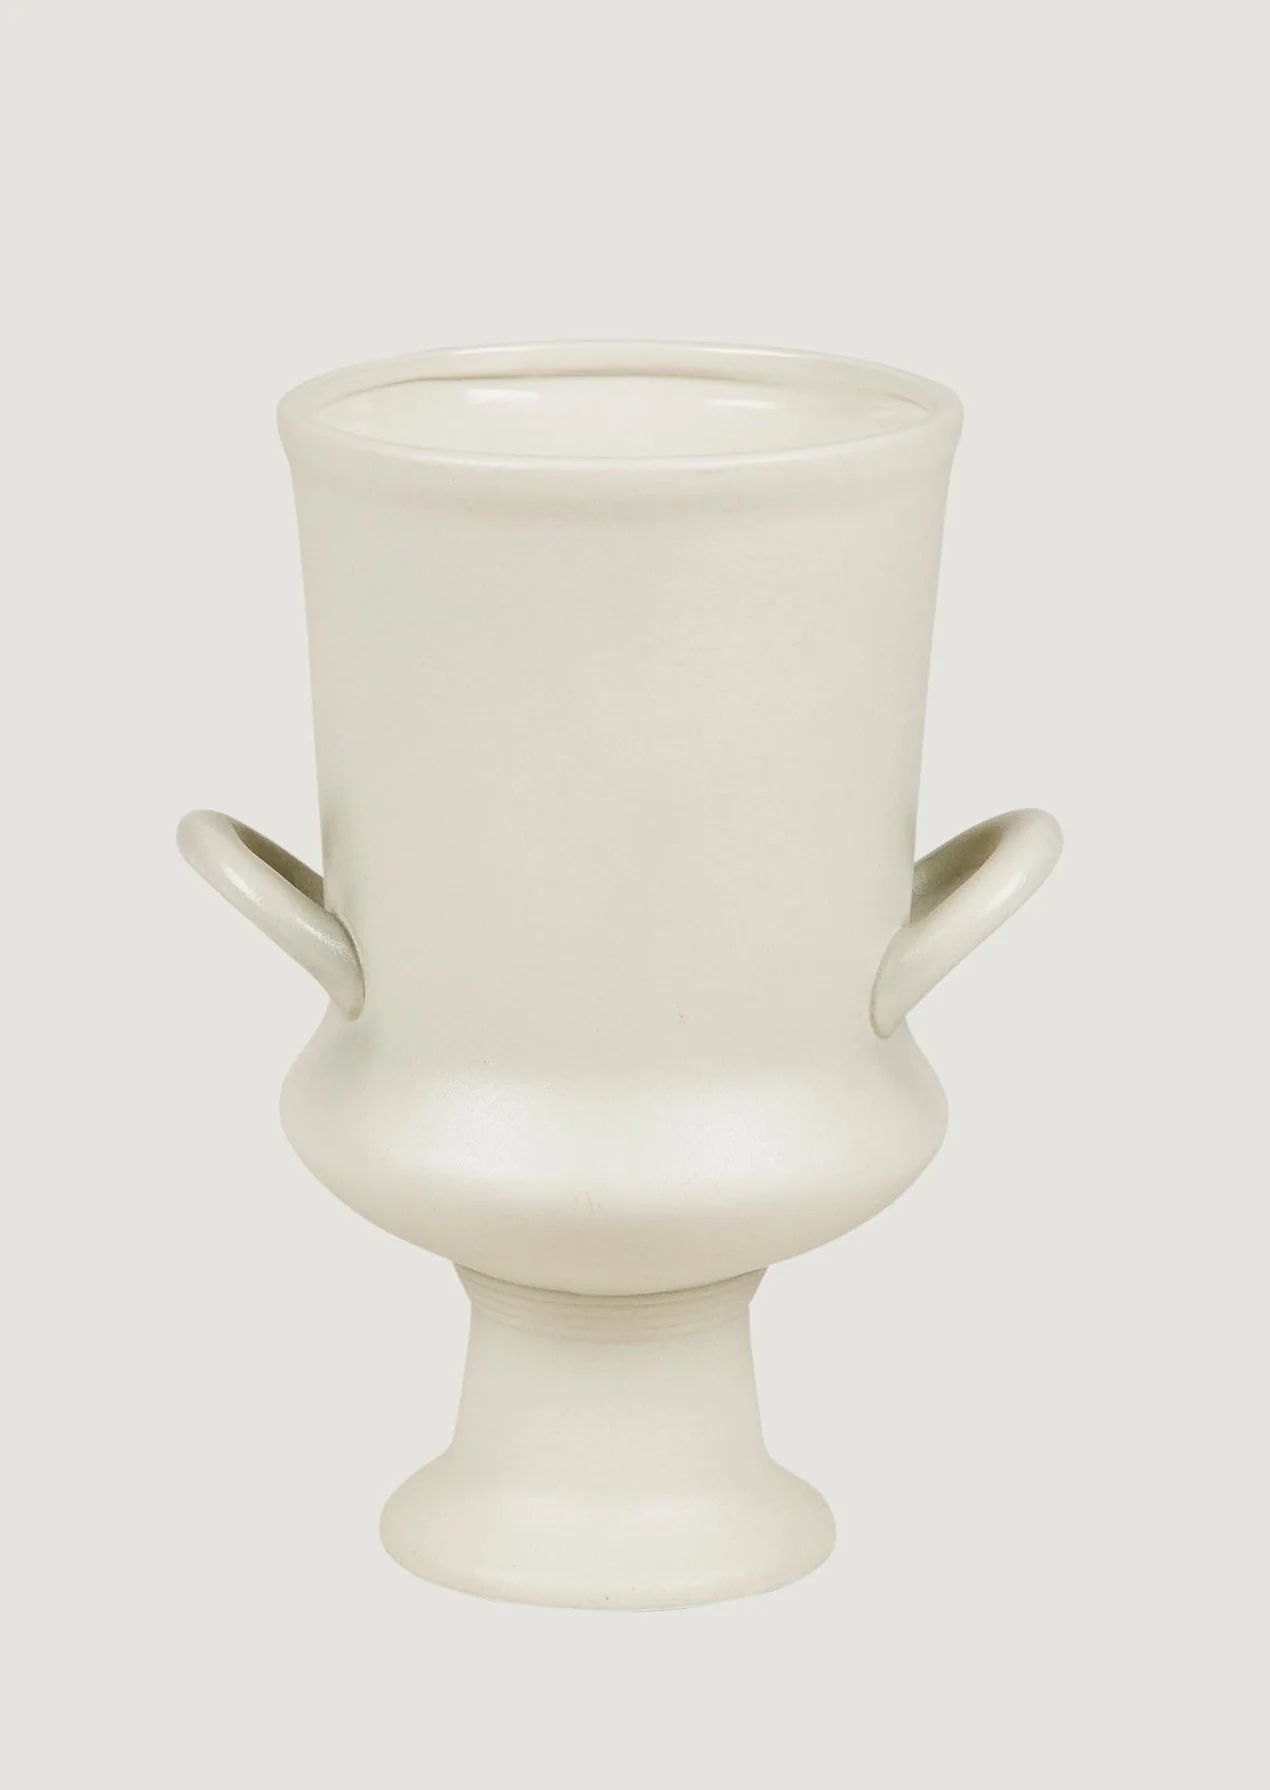 Boutique Ceramic Vases at Afloral.com | Urn Vase in Matte Grey White | Afloral